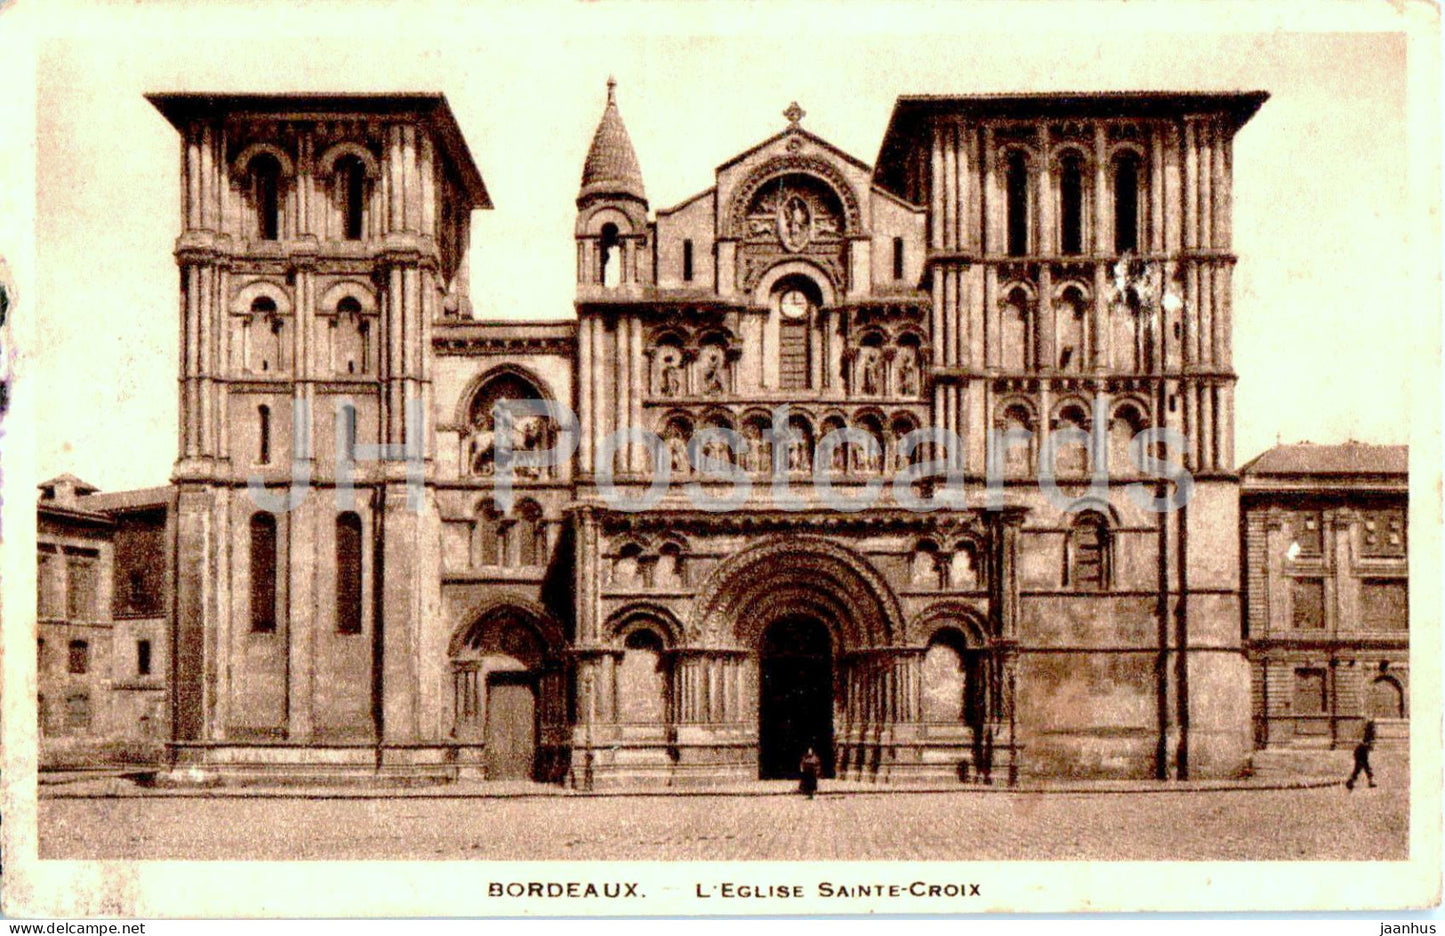 Bordeaux - L'Eglise Sainte Croix - church - old postcard - 1937 - France - used - JH Postcards